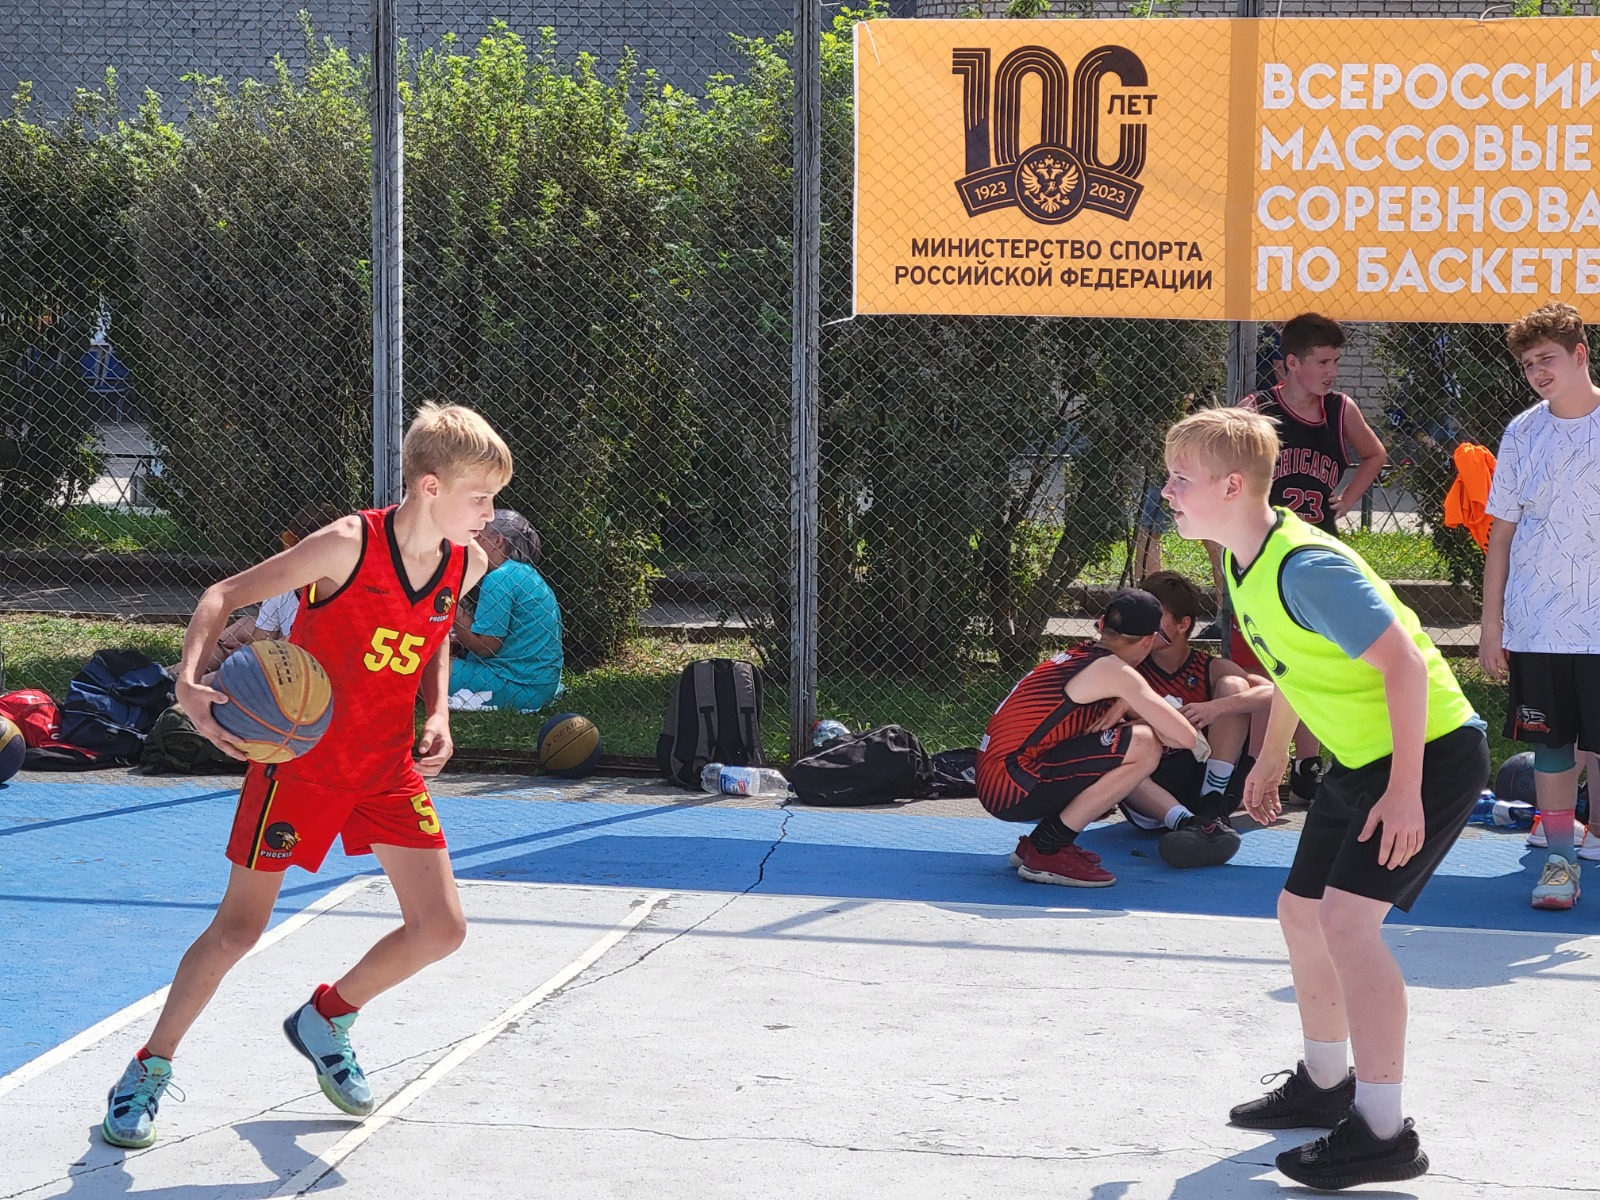 В Иванове стартует открытое первенство региона по баскетболу 3x3.